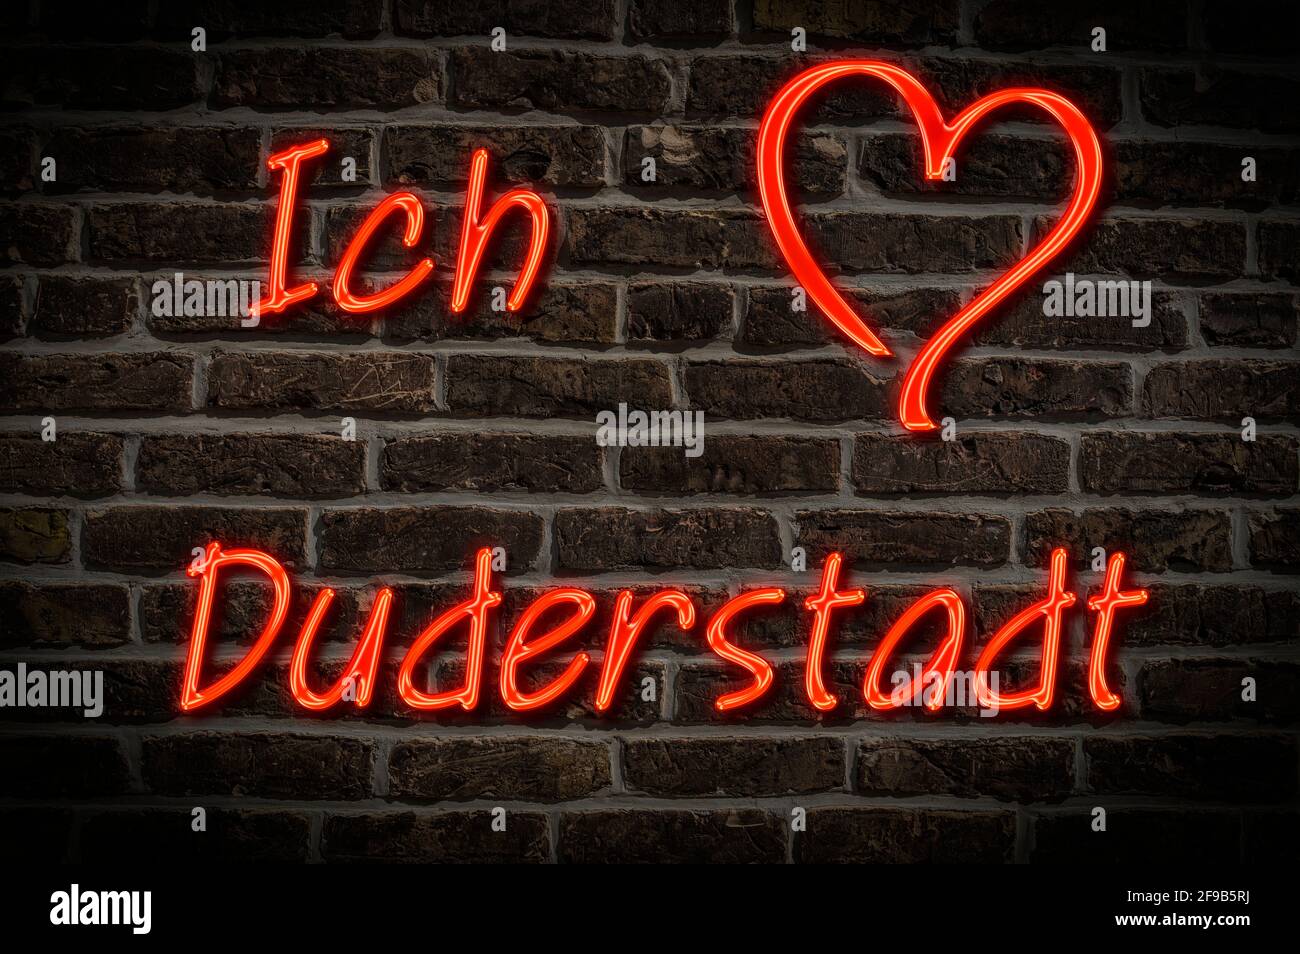 Leuchtreklame, Ich liebe Duderstadt, Niedersachsen, Deutschland, Europa | Illuminated advertising, I love Duderstadt, Lower Saxony, Germany, Europe Stock Photo